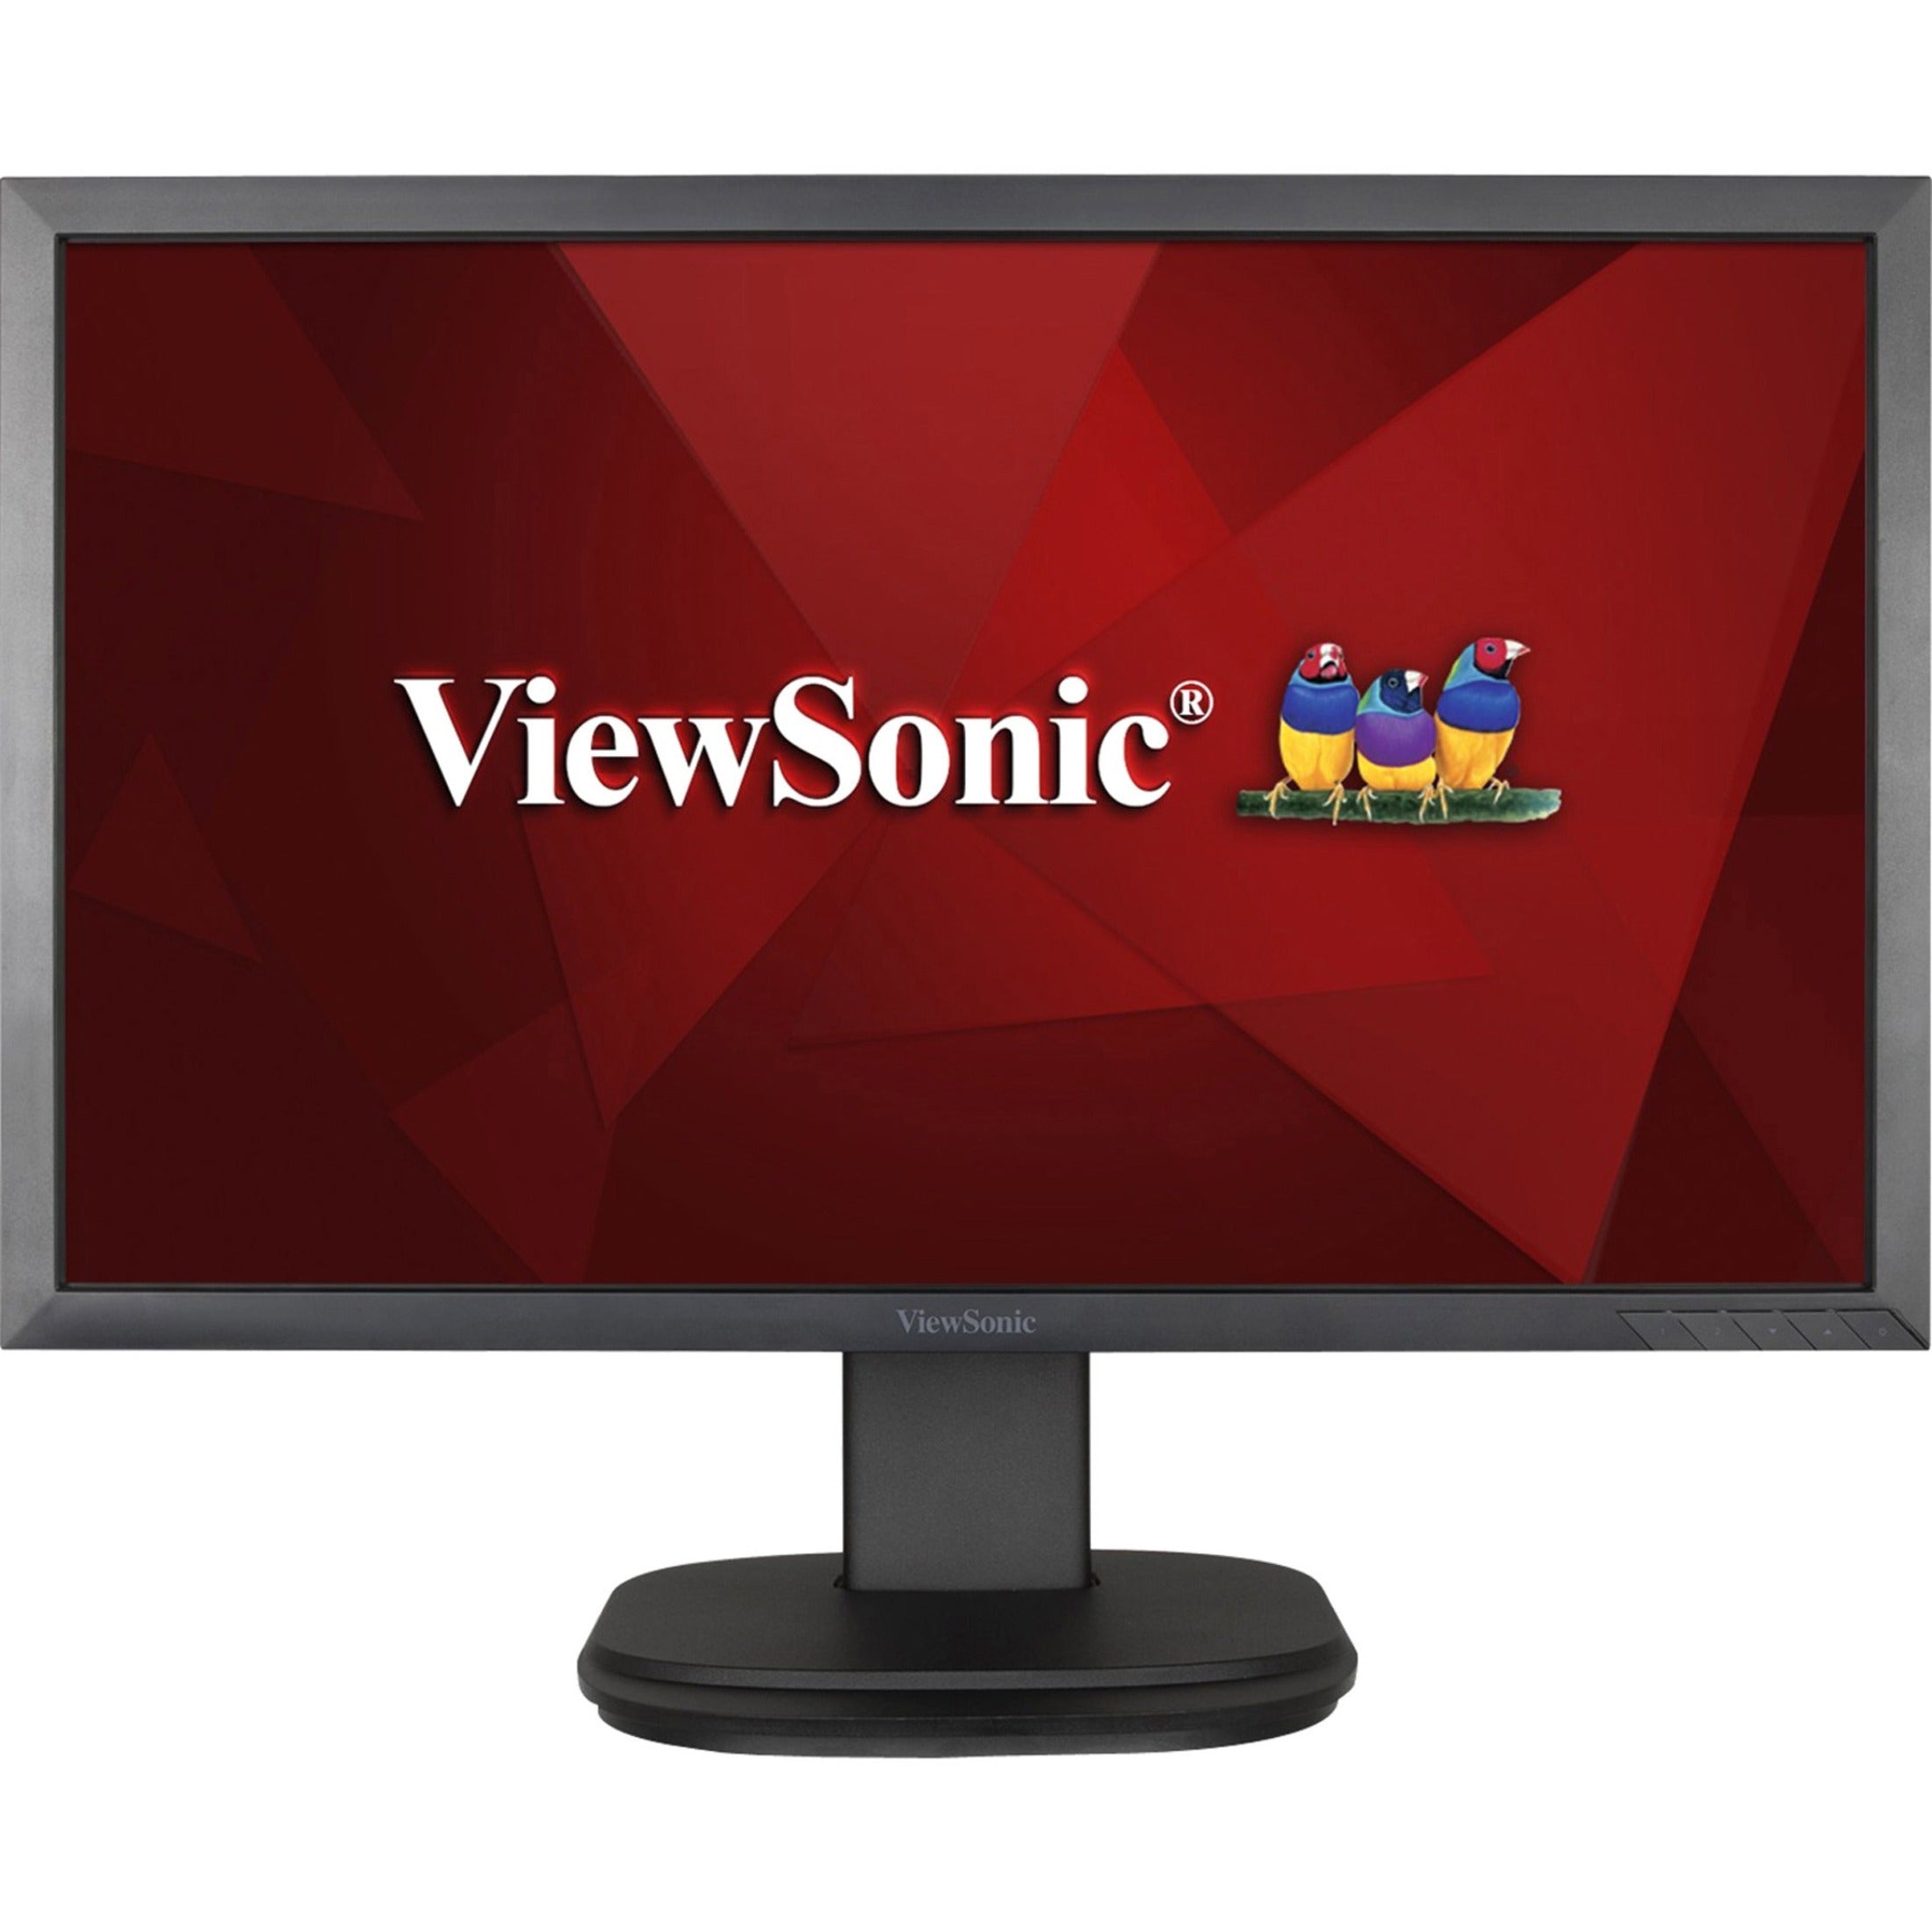 ViewSonic VG2239SMH LED Monitor Full HD, 20-1/5W x 9-2/5D x 16-1/2H, Black